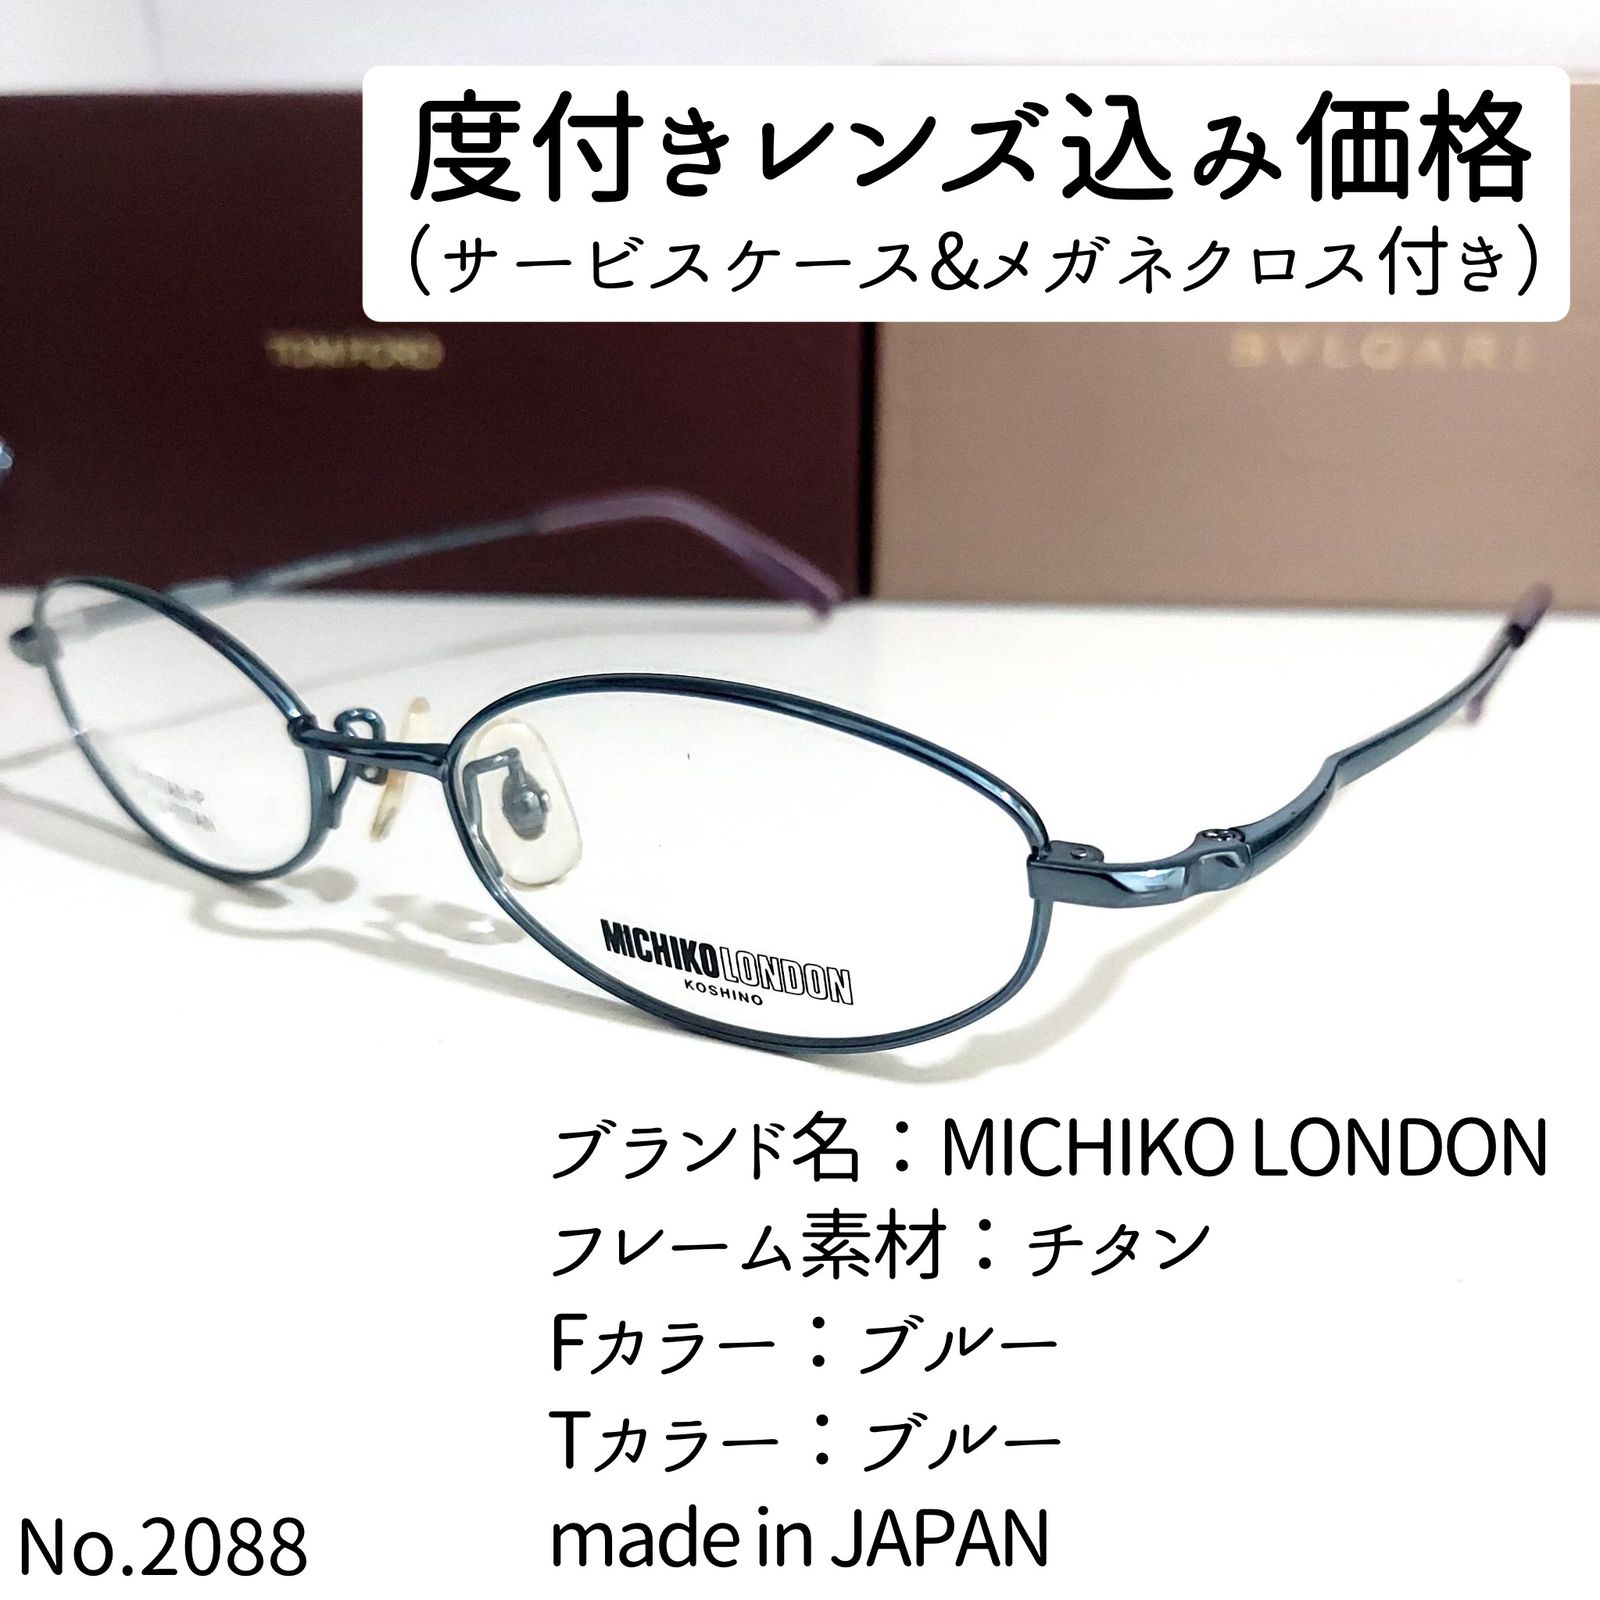 No.2088-メガネ MICHIKO LONDON【フレームのみ価格】-